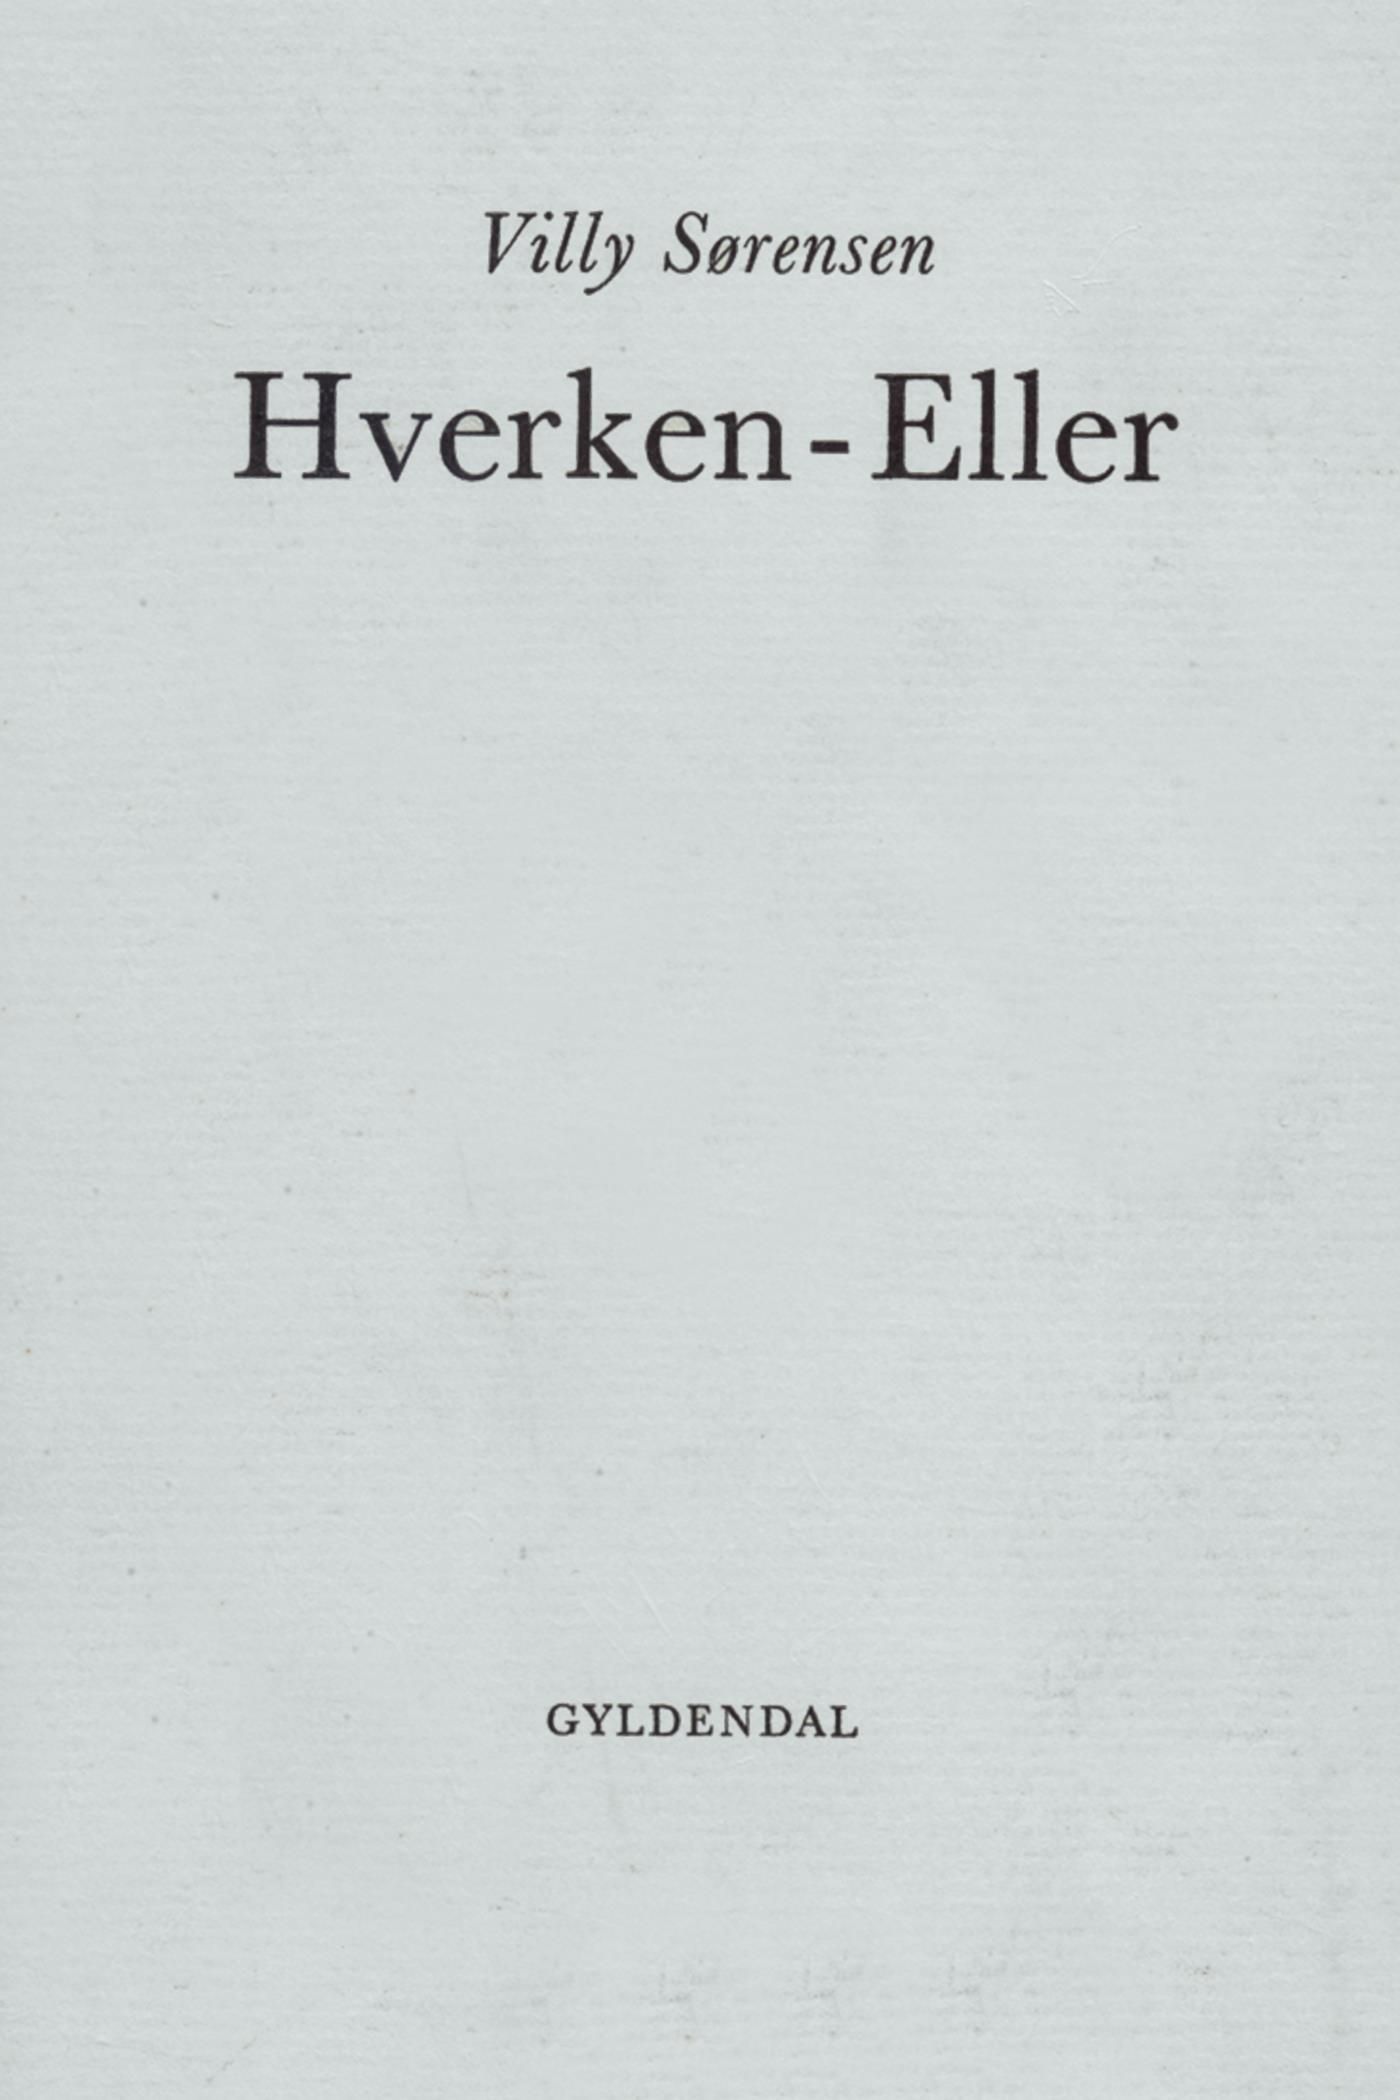 Hverken-Eller, eBook by Villy Sørensen